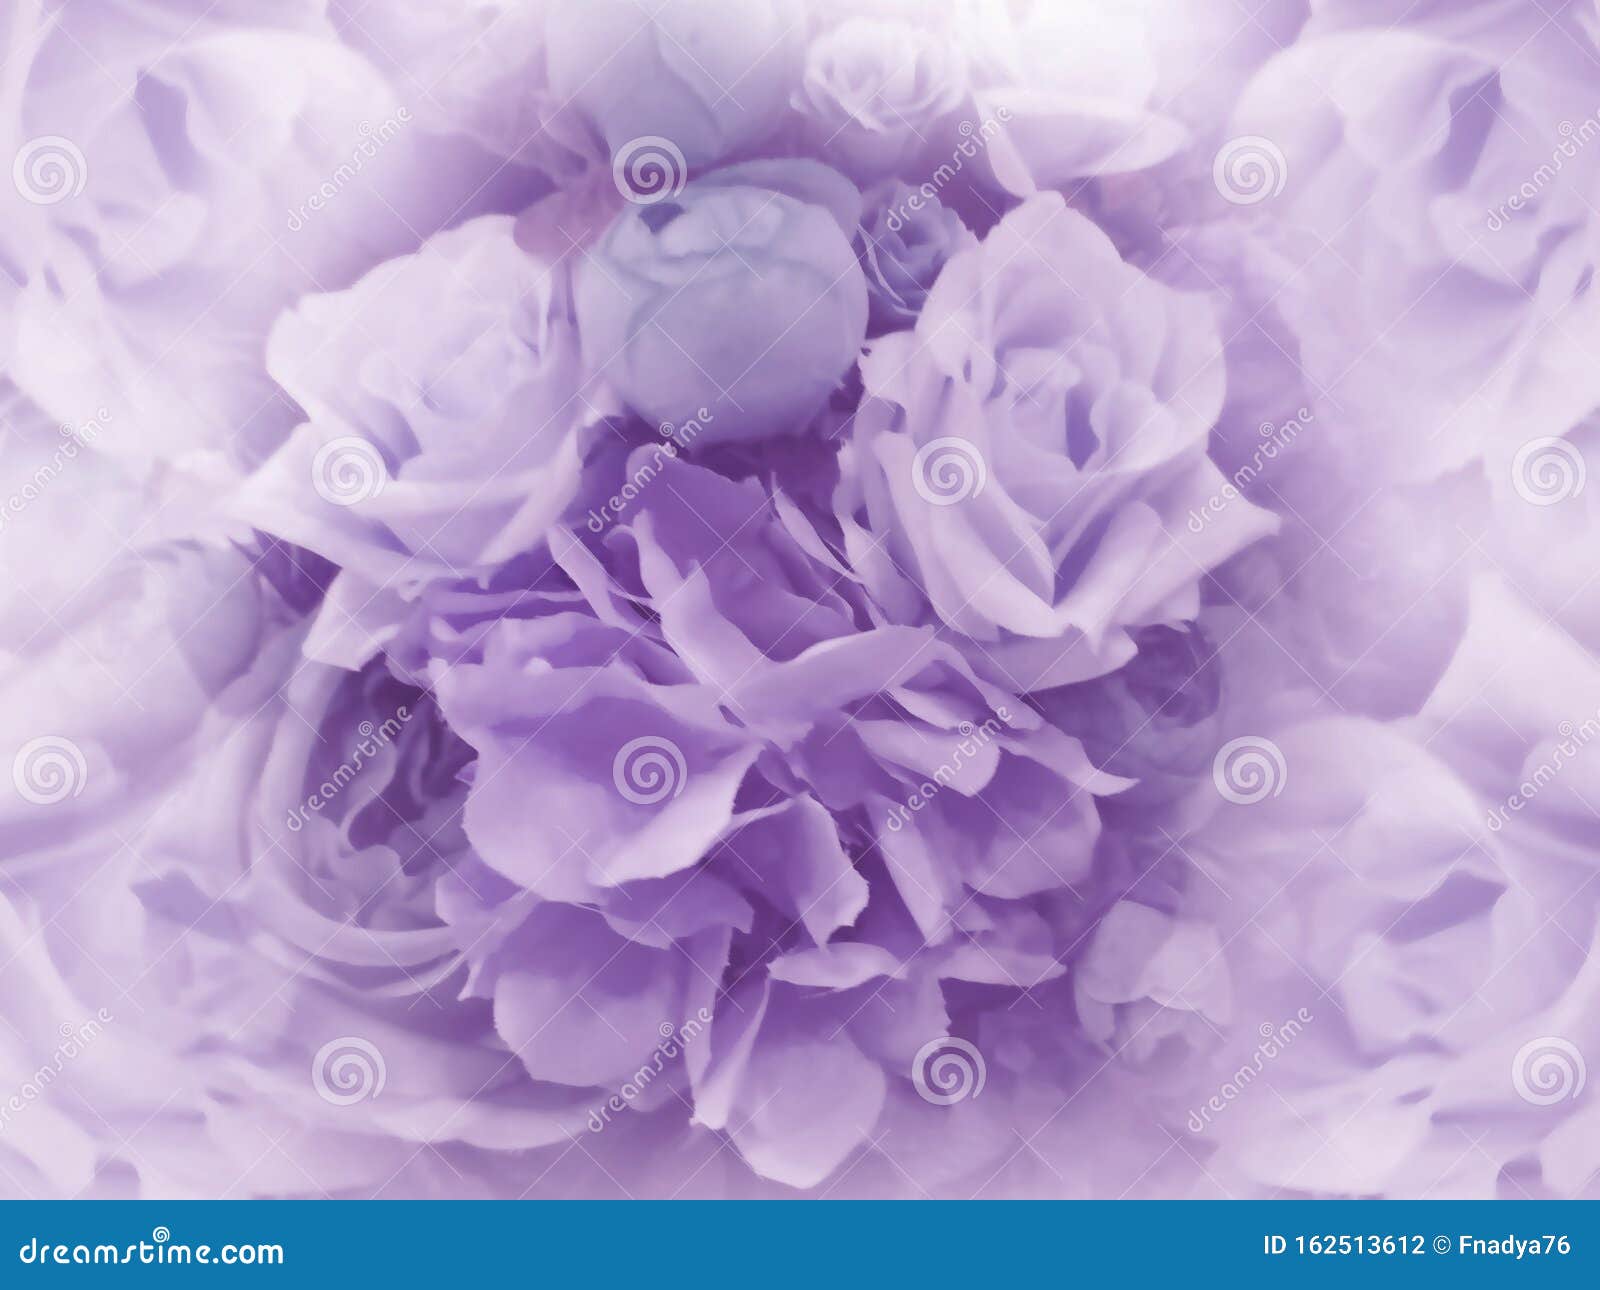 Trong hình nền hoa vintage màu tím nhạt, bạn sẽ cảm nhận được sự ngọt ngào và lãng mạn mà không gì có thể thay thế. Từng cánh hoa nhẹ nhàng và tinh tế sẽ khiến cho không gian của bạn trở nên độc đáo hơn. Hãy đón nhận một món quà tuyệt vời từ mẫu hình nền này.